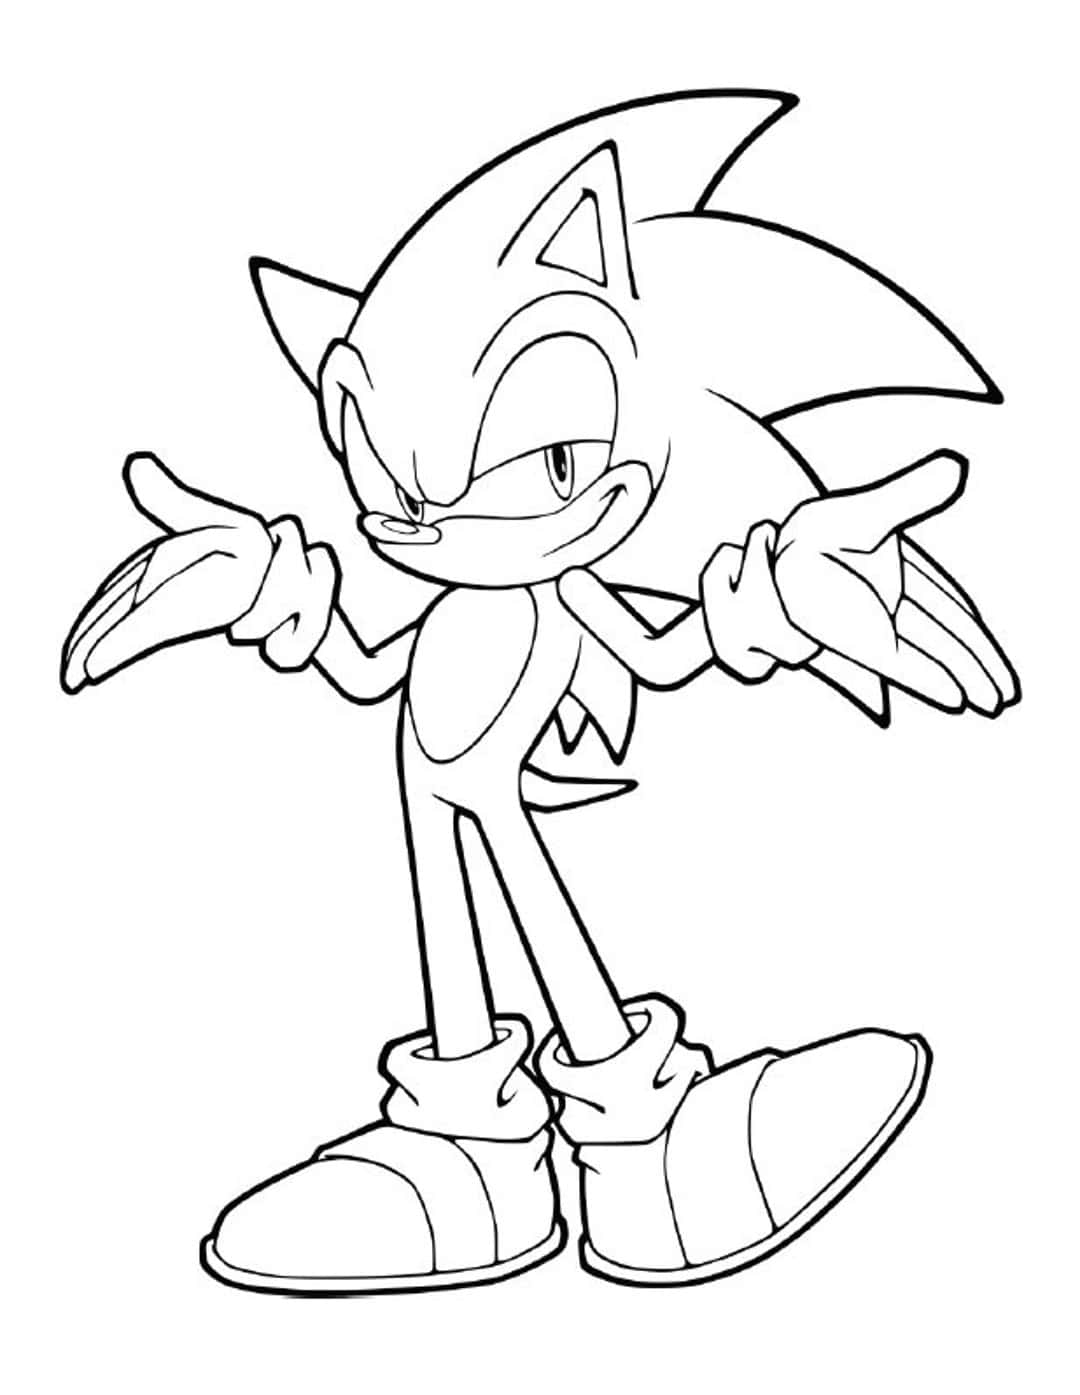 Páginaspara Colorear De Sonic The Hedgehog